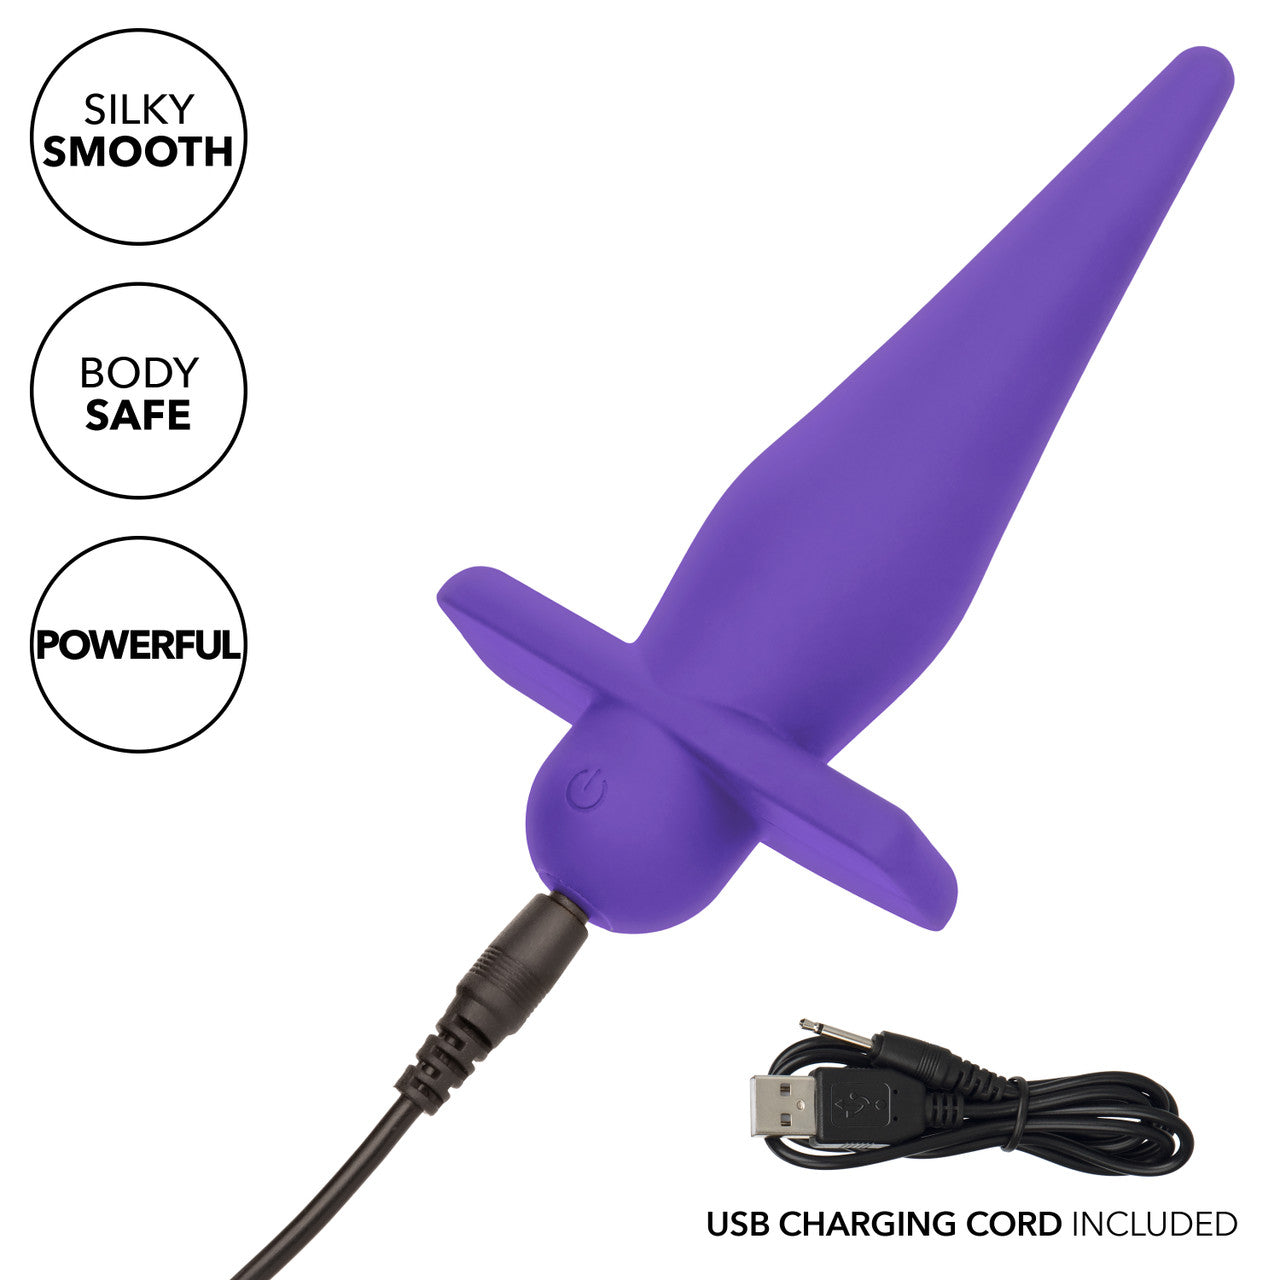 Sonde haute intensité rechargeable - Violet 